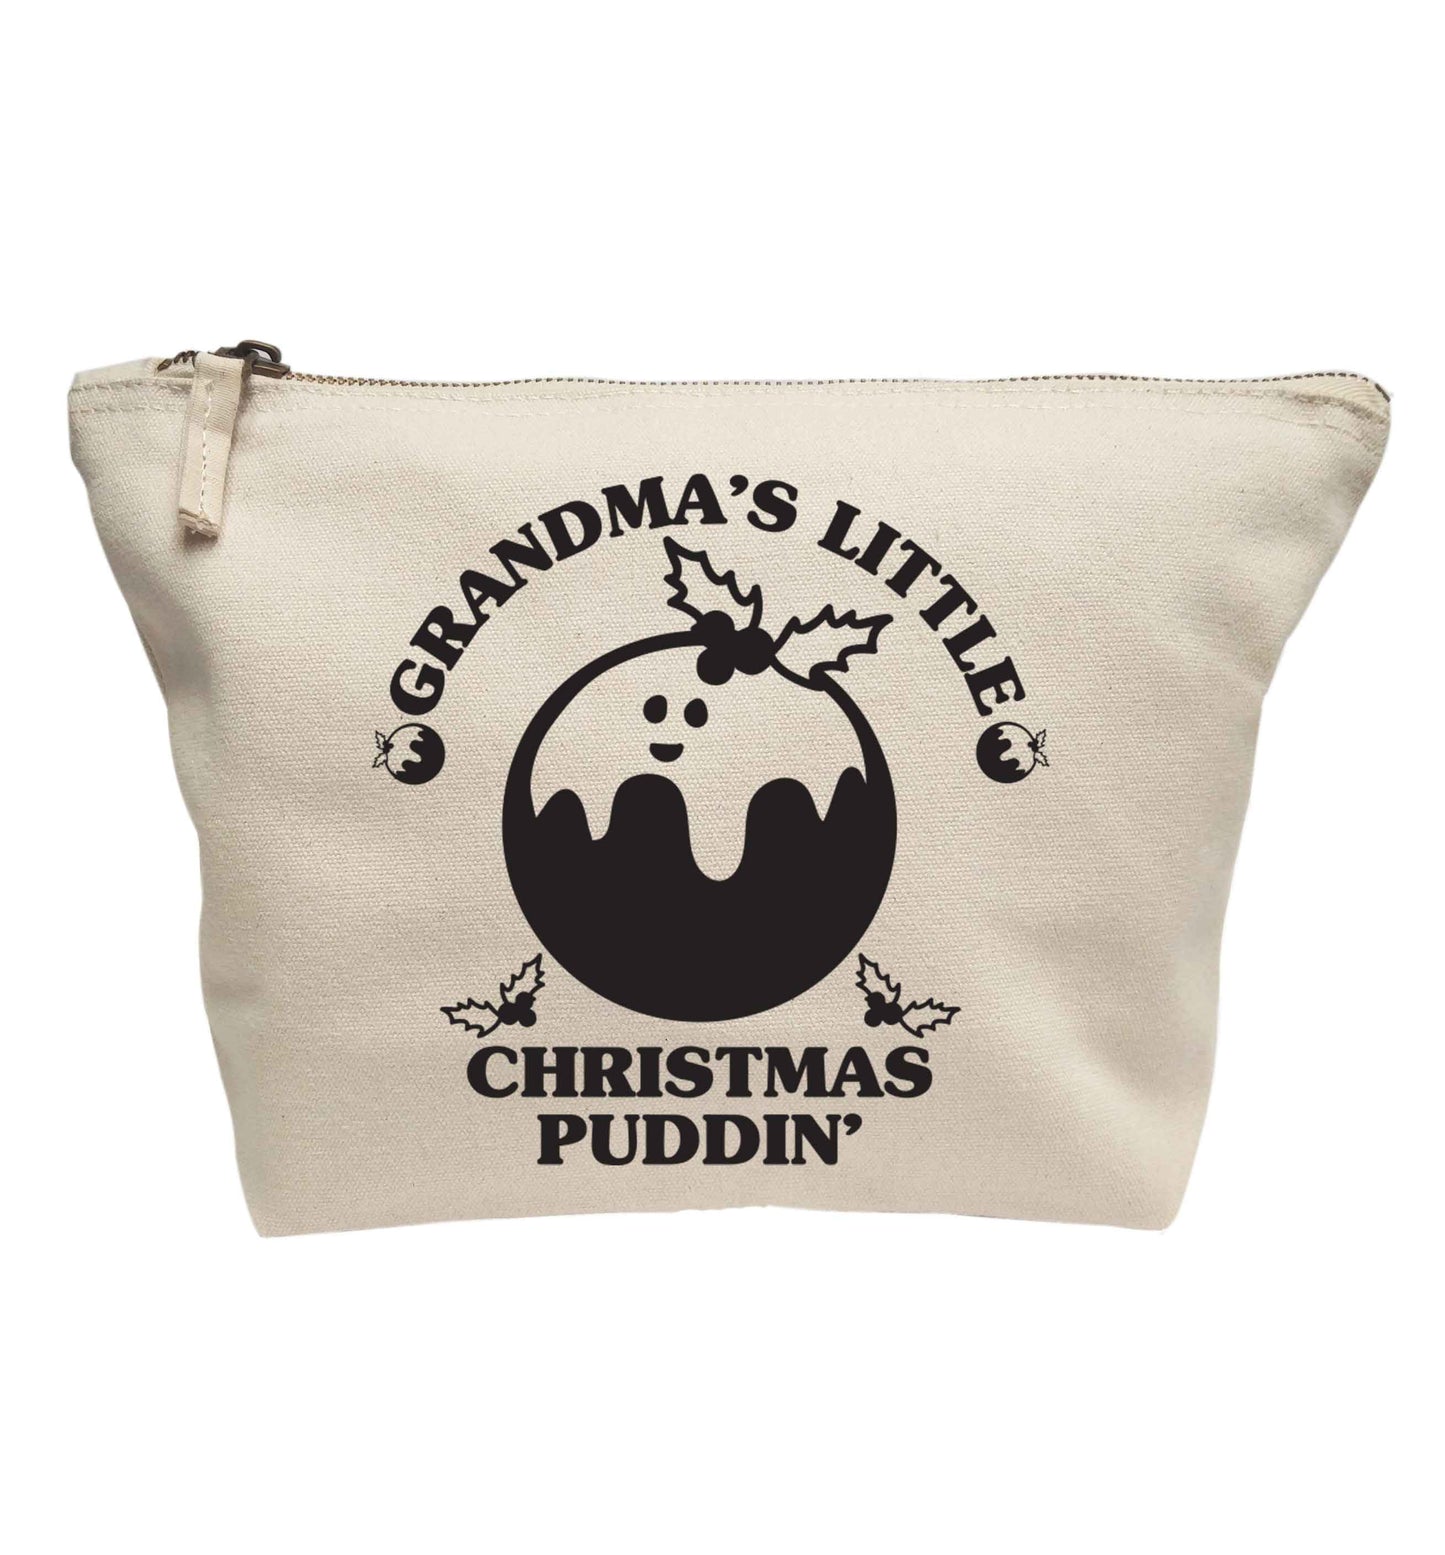 Grandma's little Christmas puddin' | makeup / wash bag